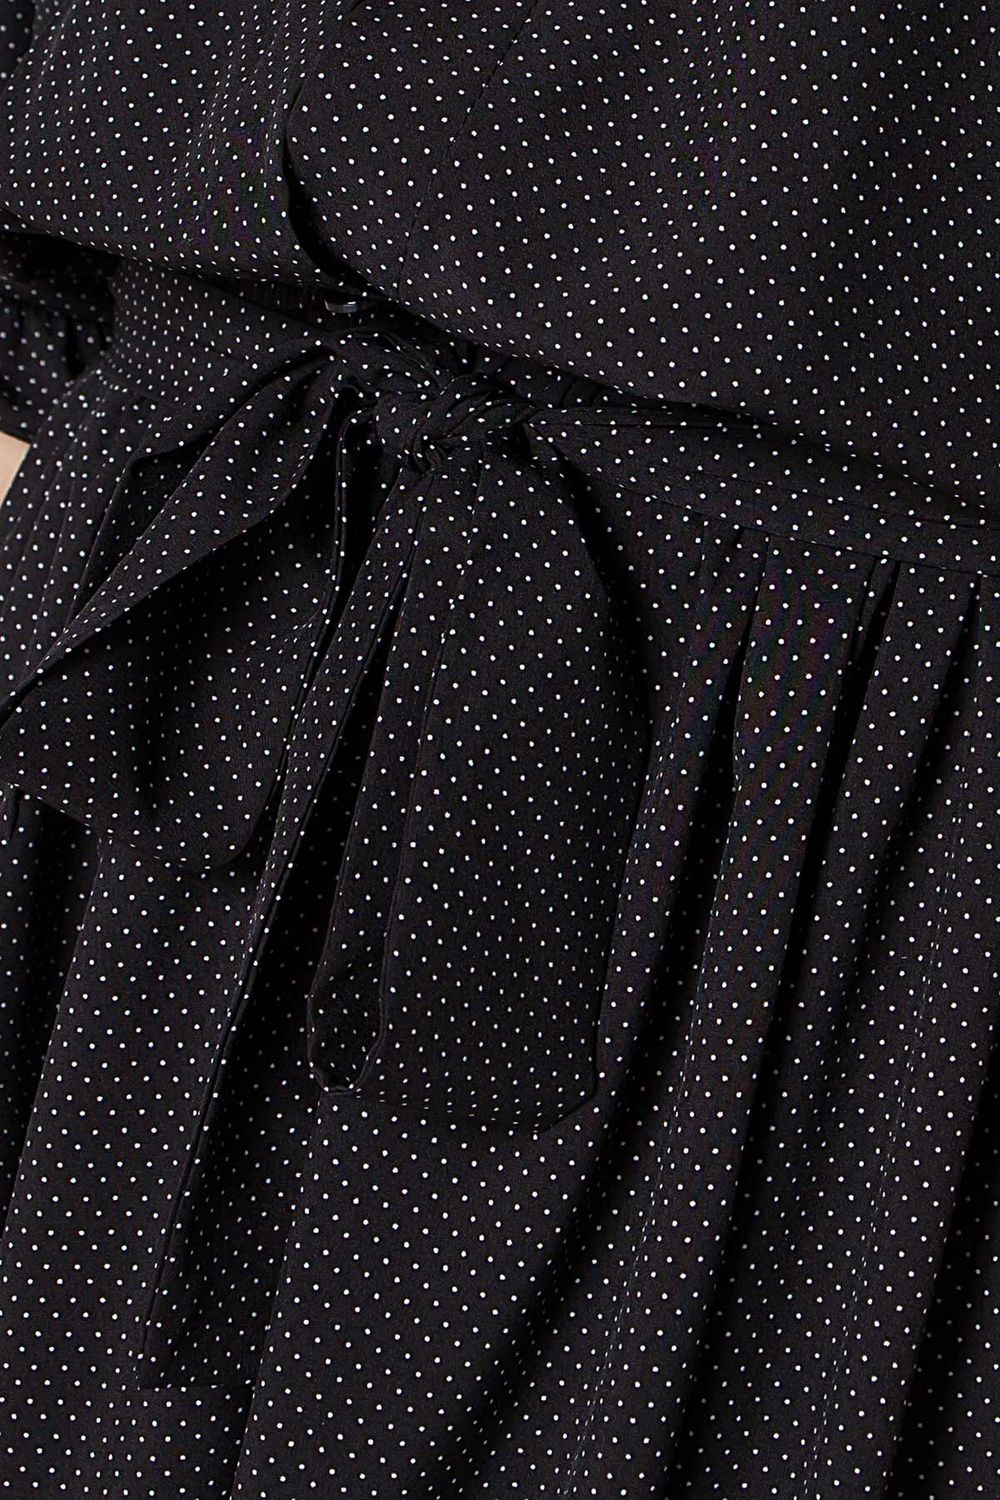 Платье рубашка в горошек черное - фото